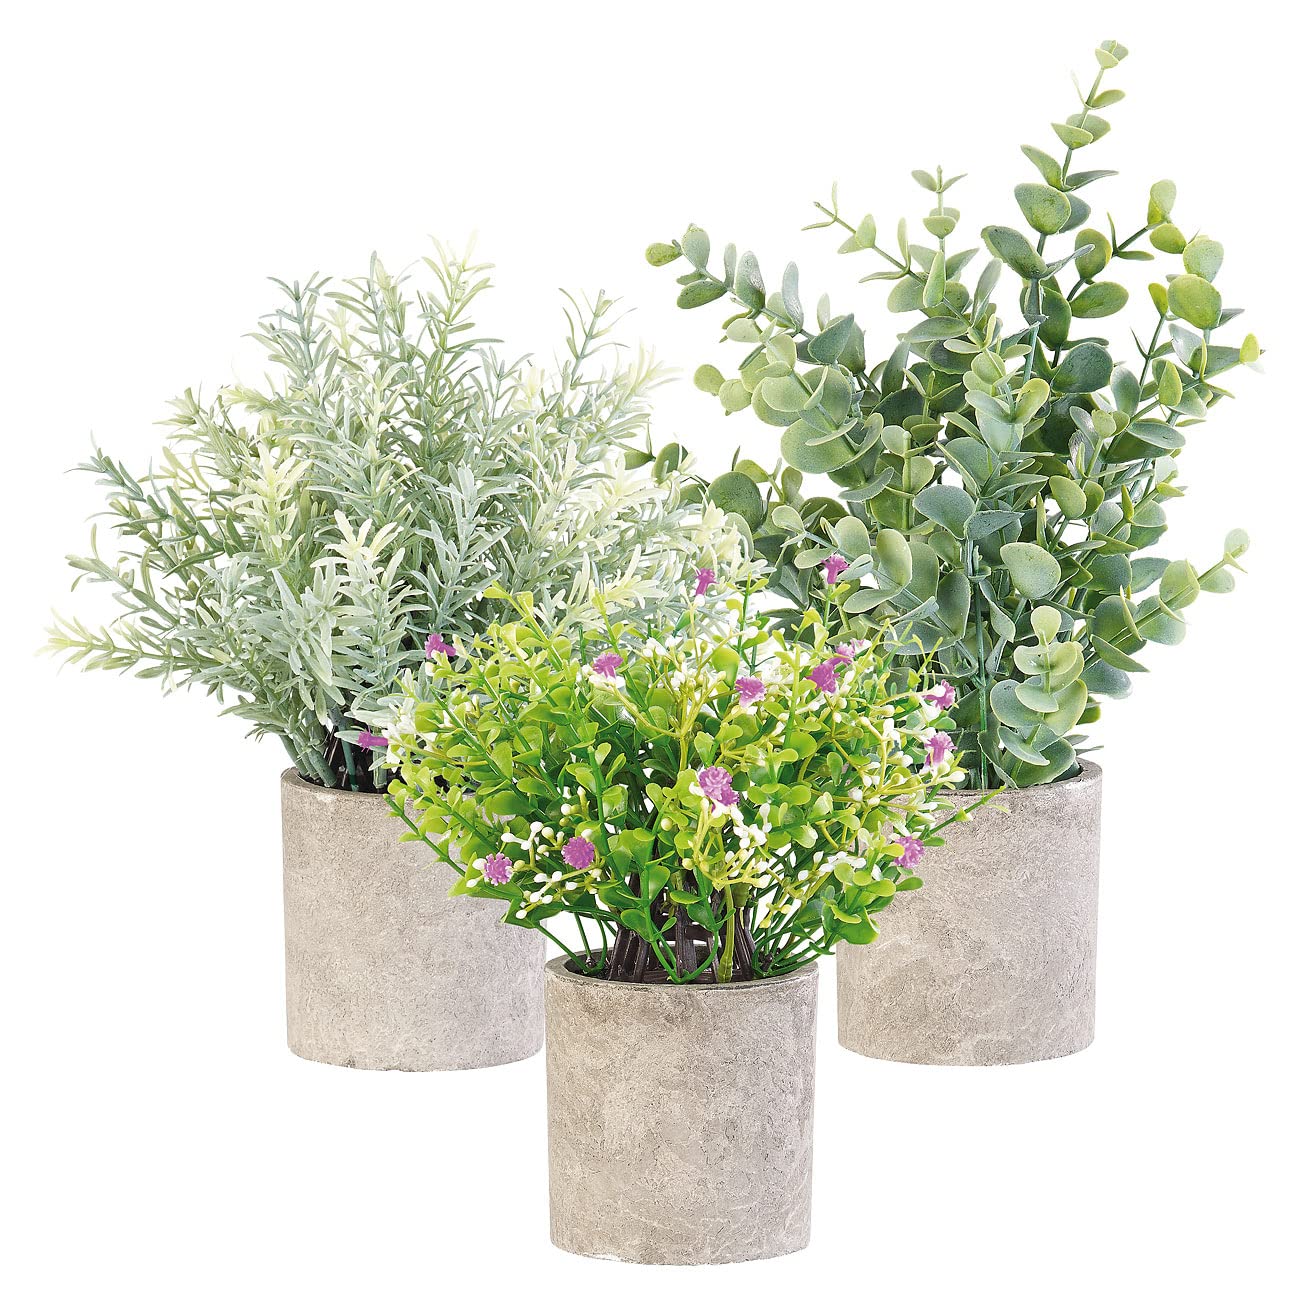 Carlo Milano Kunstpflanze: 3er-Set künstliche Deko-Pflanzen mit Töpfen, je 21, 23 und 26 cm hoch (Kunstblume, Unechte Pflanzen, Mitbringsel)